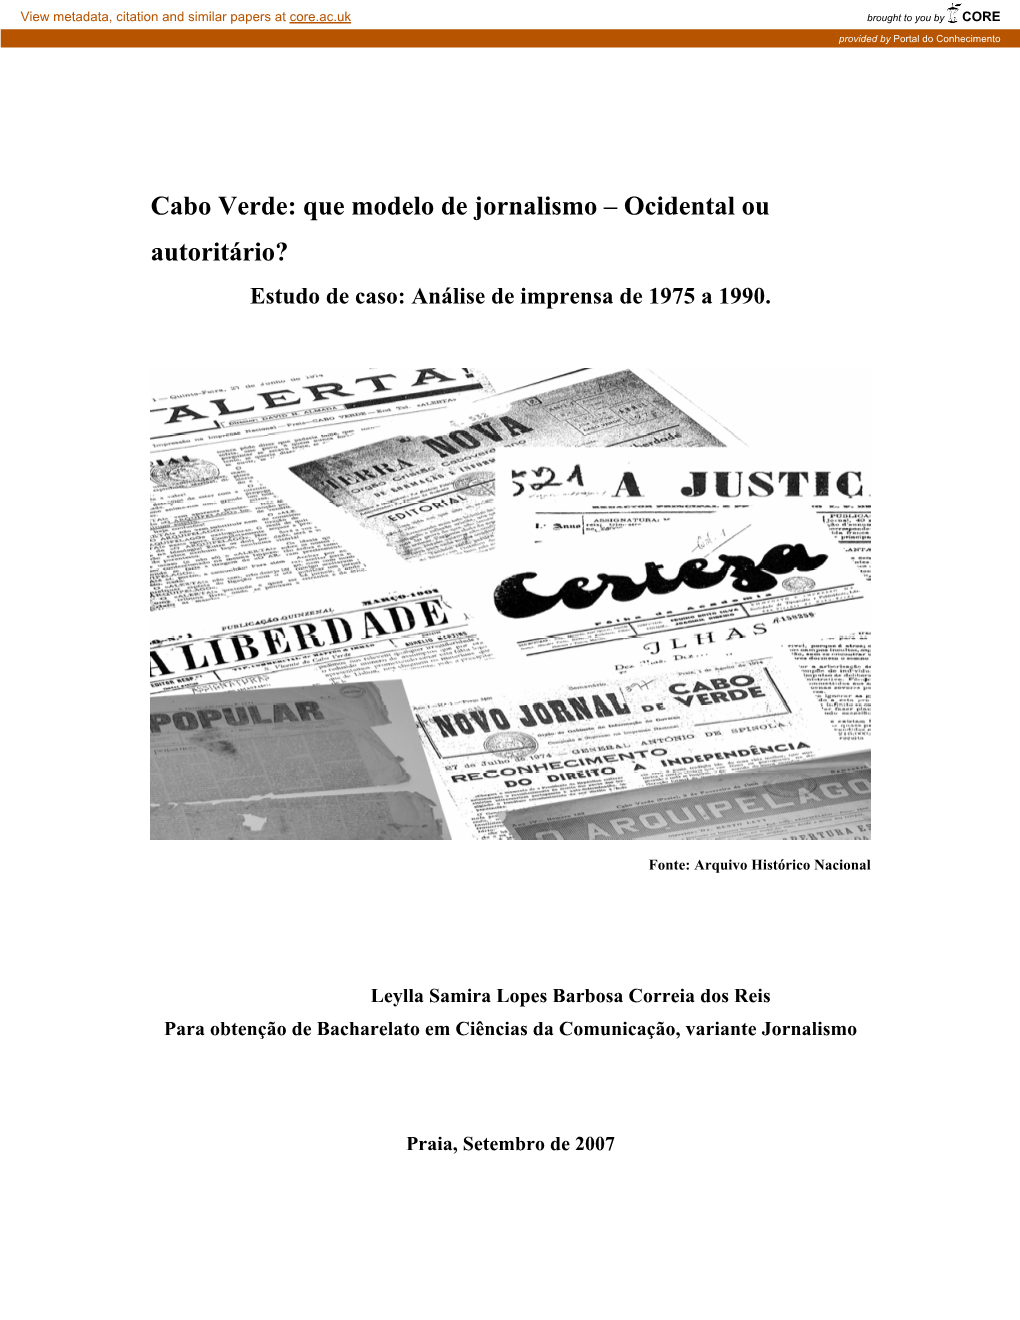 Cabo Verde: Que Modelo De Jornalismo – Ocidental Ou Autoritário? Estudo De Caso: Análise De Imprensa De 1975 a 1990